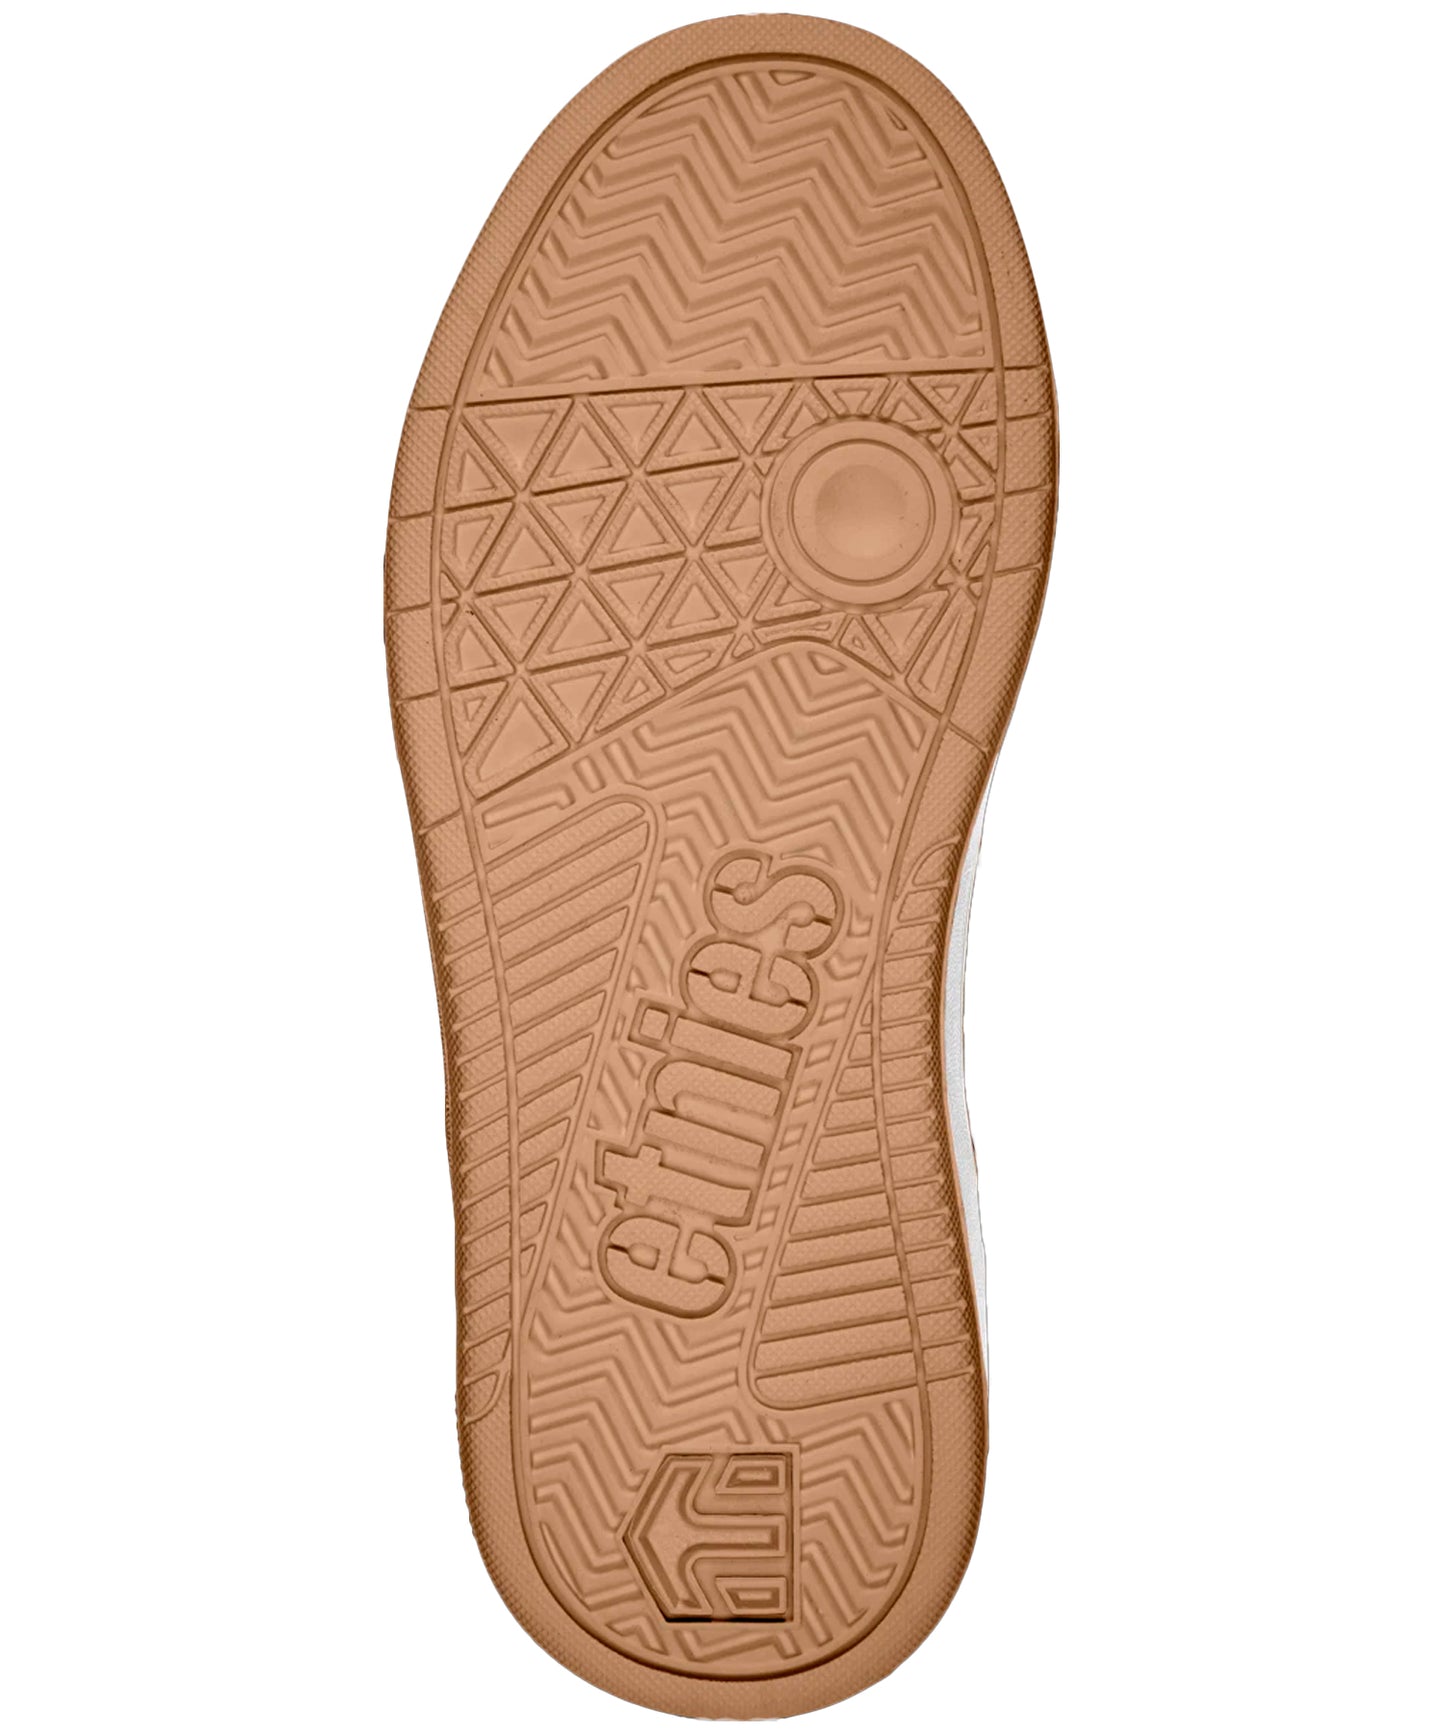 etneies-zapatillas-marana-kids-color-granate-suela-troquelada-cómodidad-y-dureza-para-modelo-pro-para-skaters